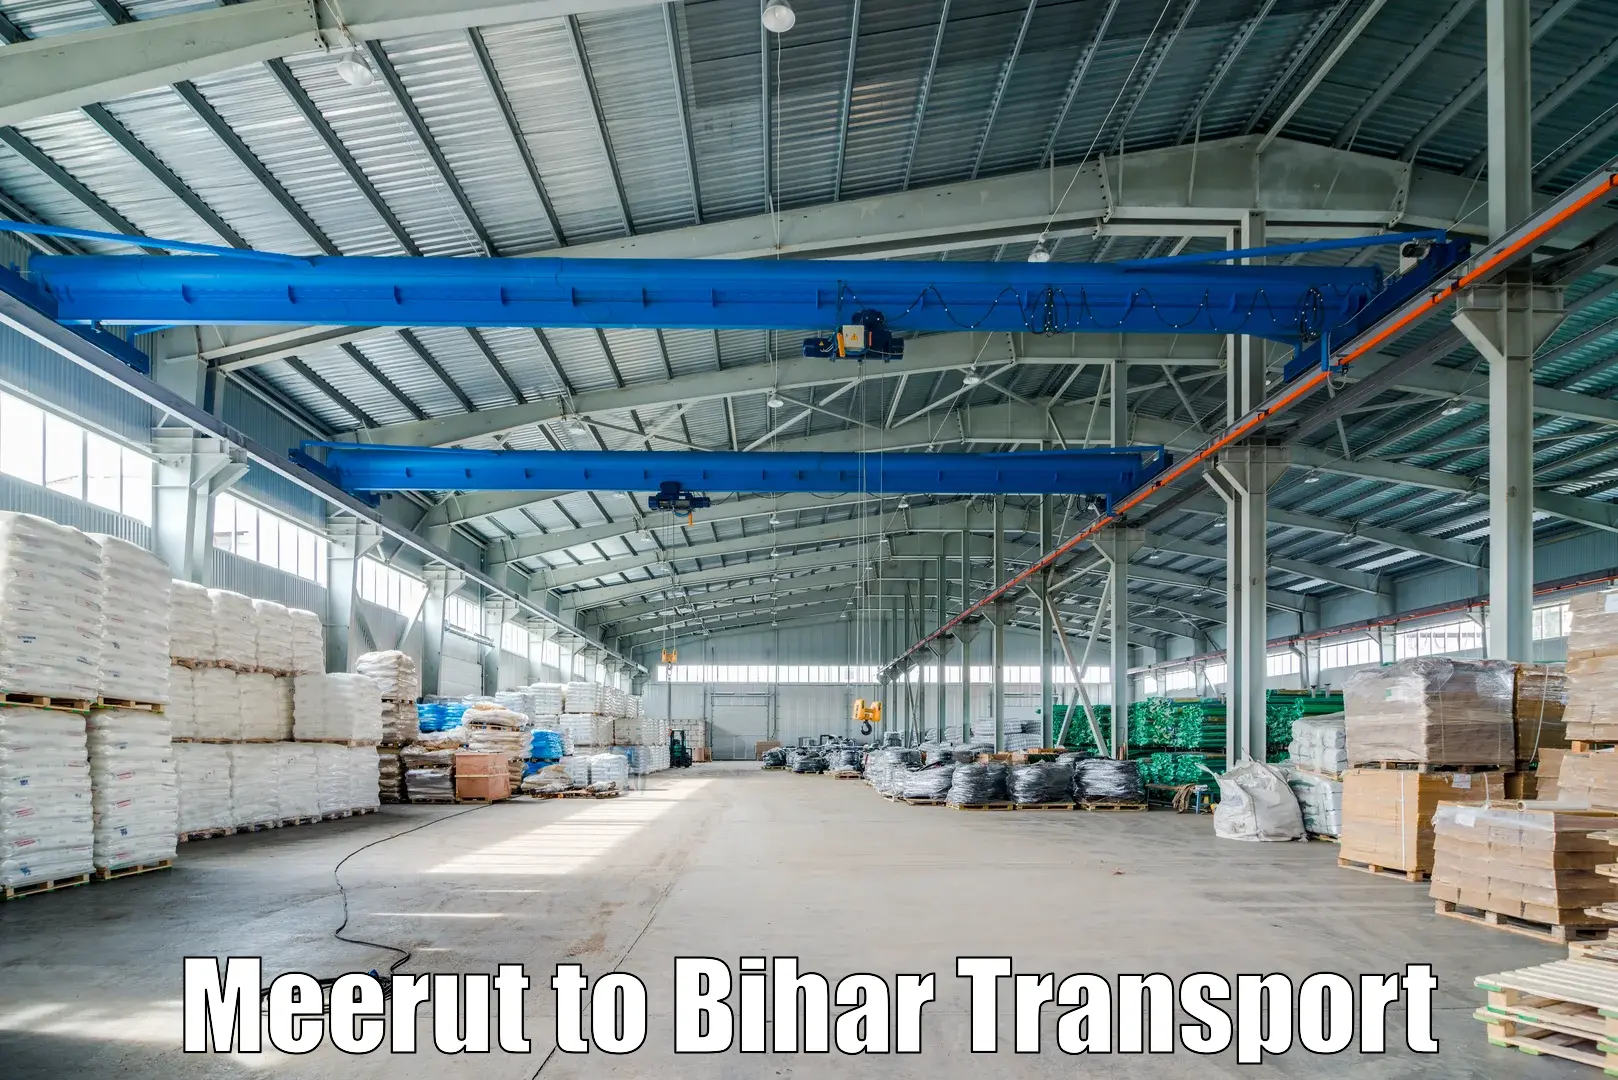 Online transport service Meerut to Biraul